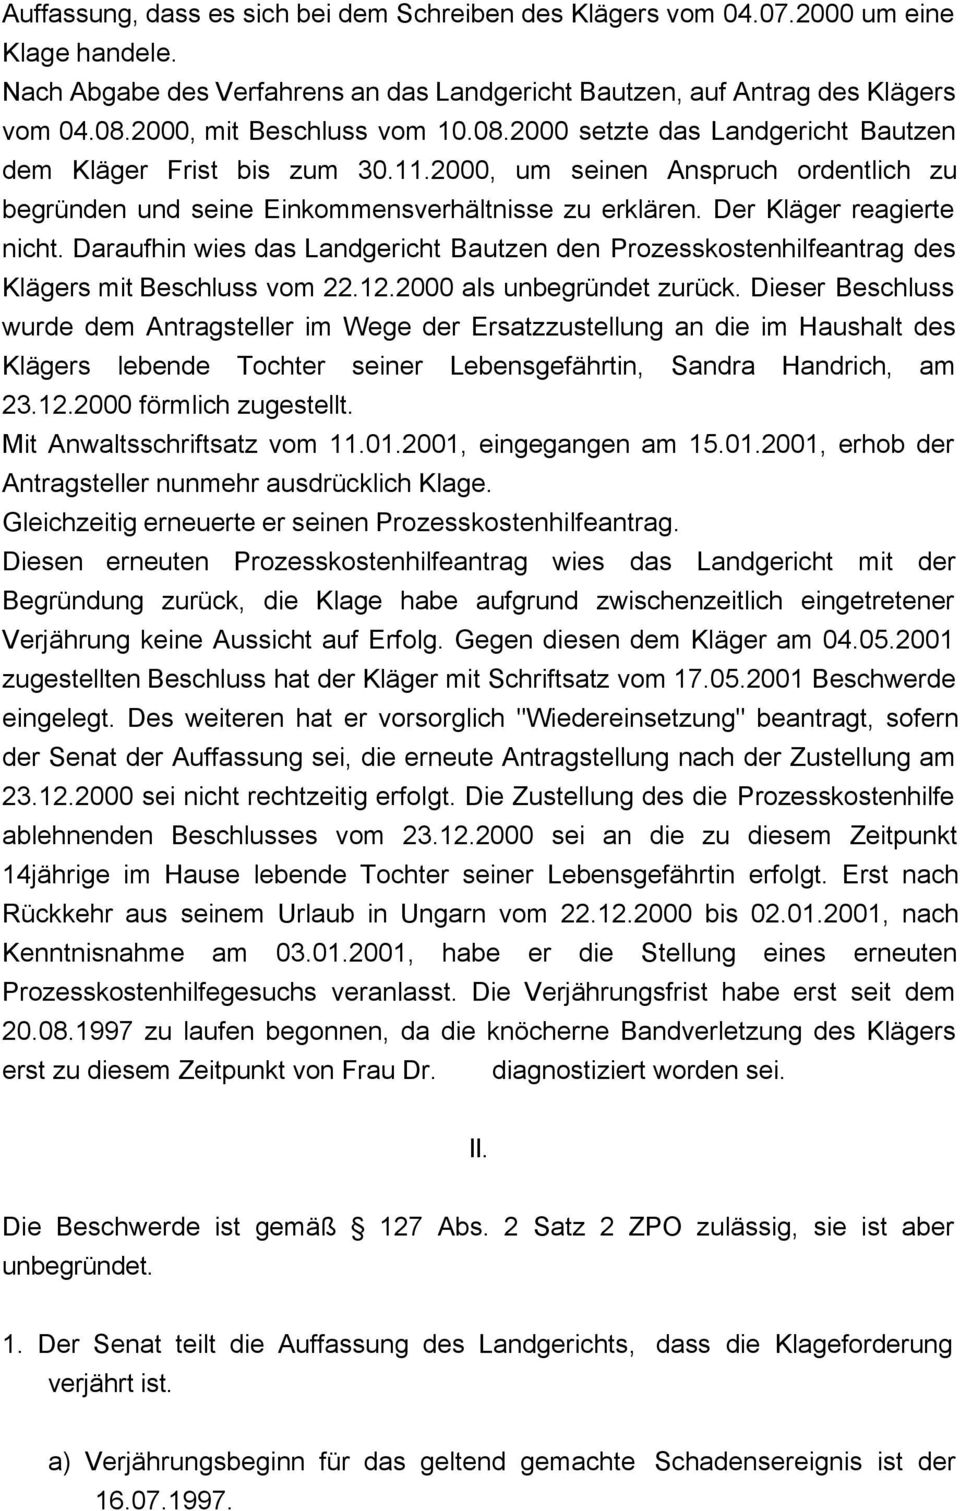 Der Kläger reagierte nicht. Daraufhin wies das Landgericht Bautzen den Prozesskostenhilfeantrag des Klägers mit Beschluss vom 22.12.2000 als unbegründet zurück.